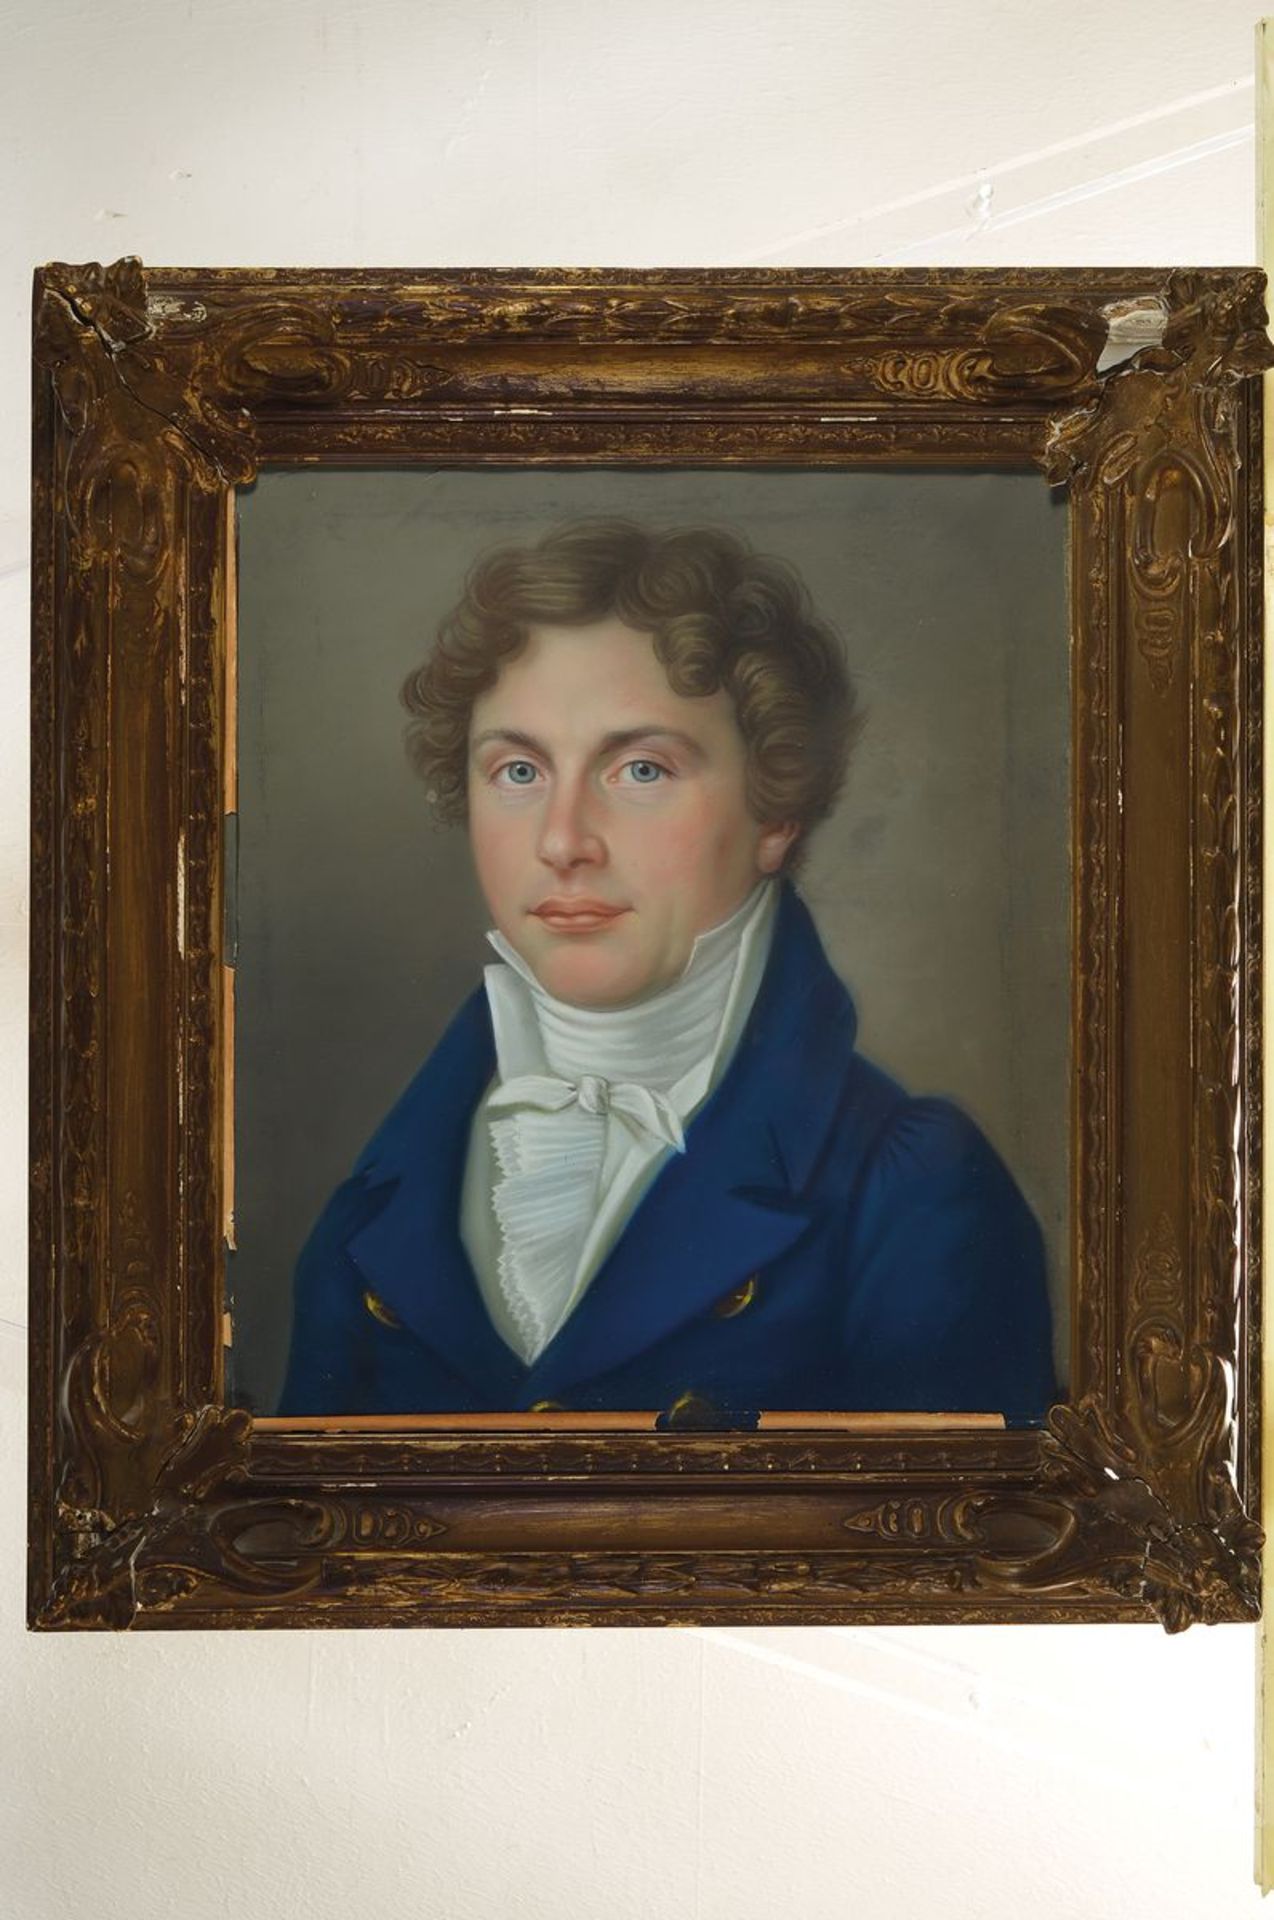 Unbekannter Künstler des Biedermeier, um 1830-40, Porträt eines Mannes, den Betrachter anschauend, - Bild 2 aus 2